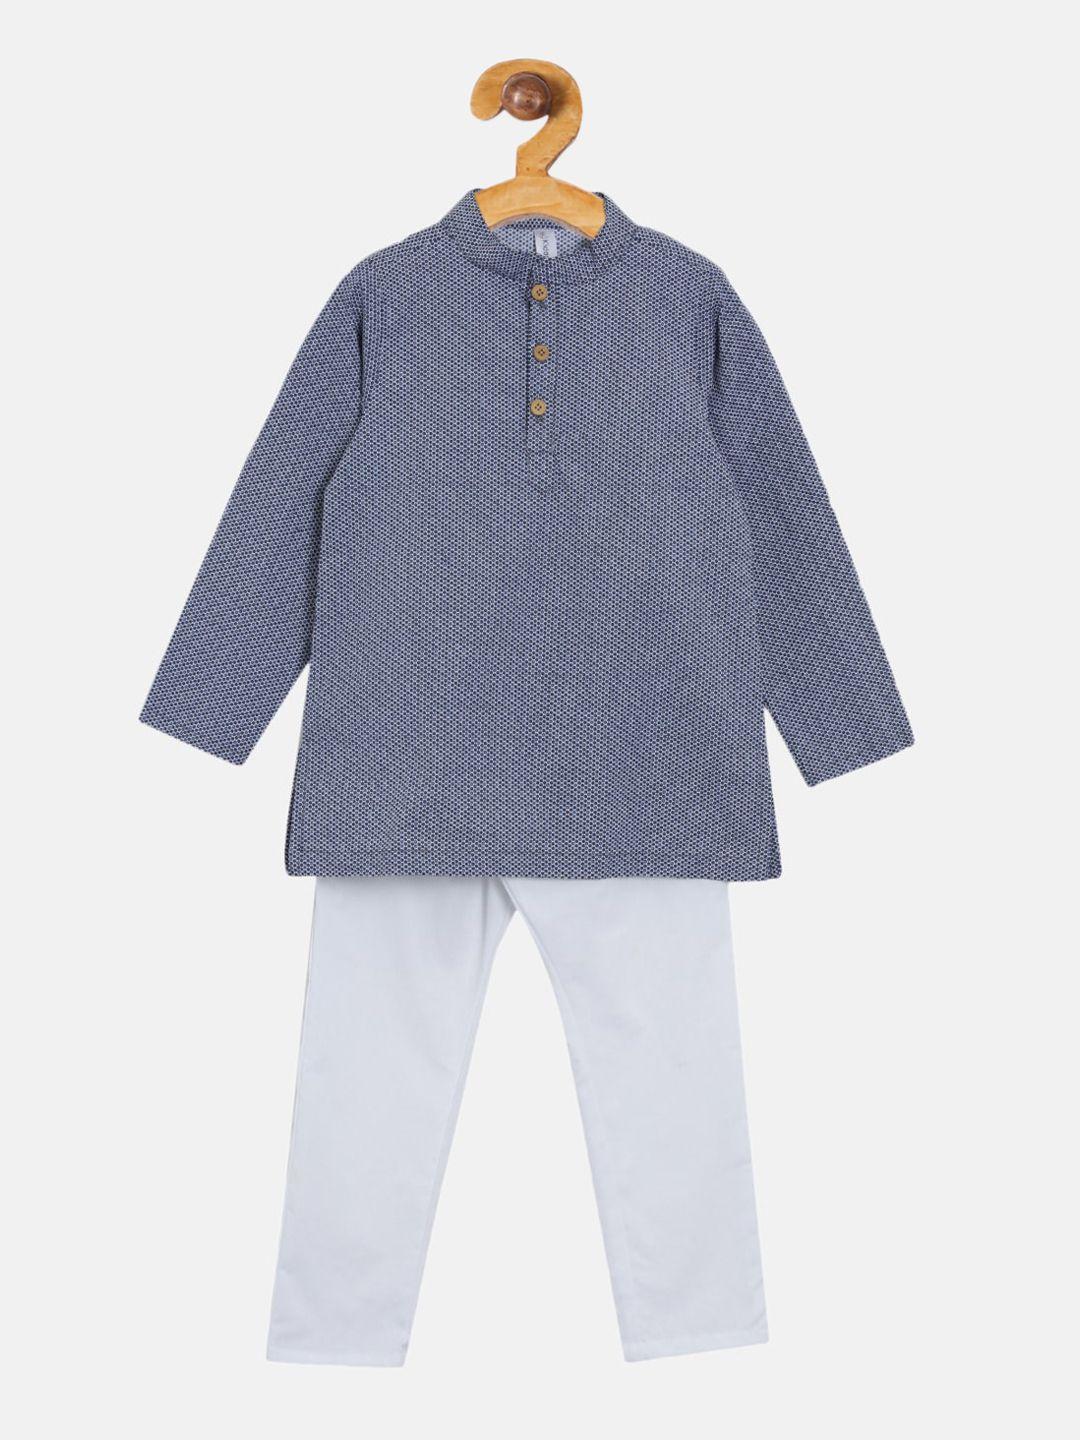 kiddopanti boys navy blue & white printed kurta with pyjamas